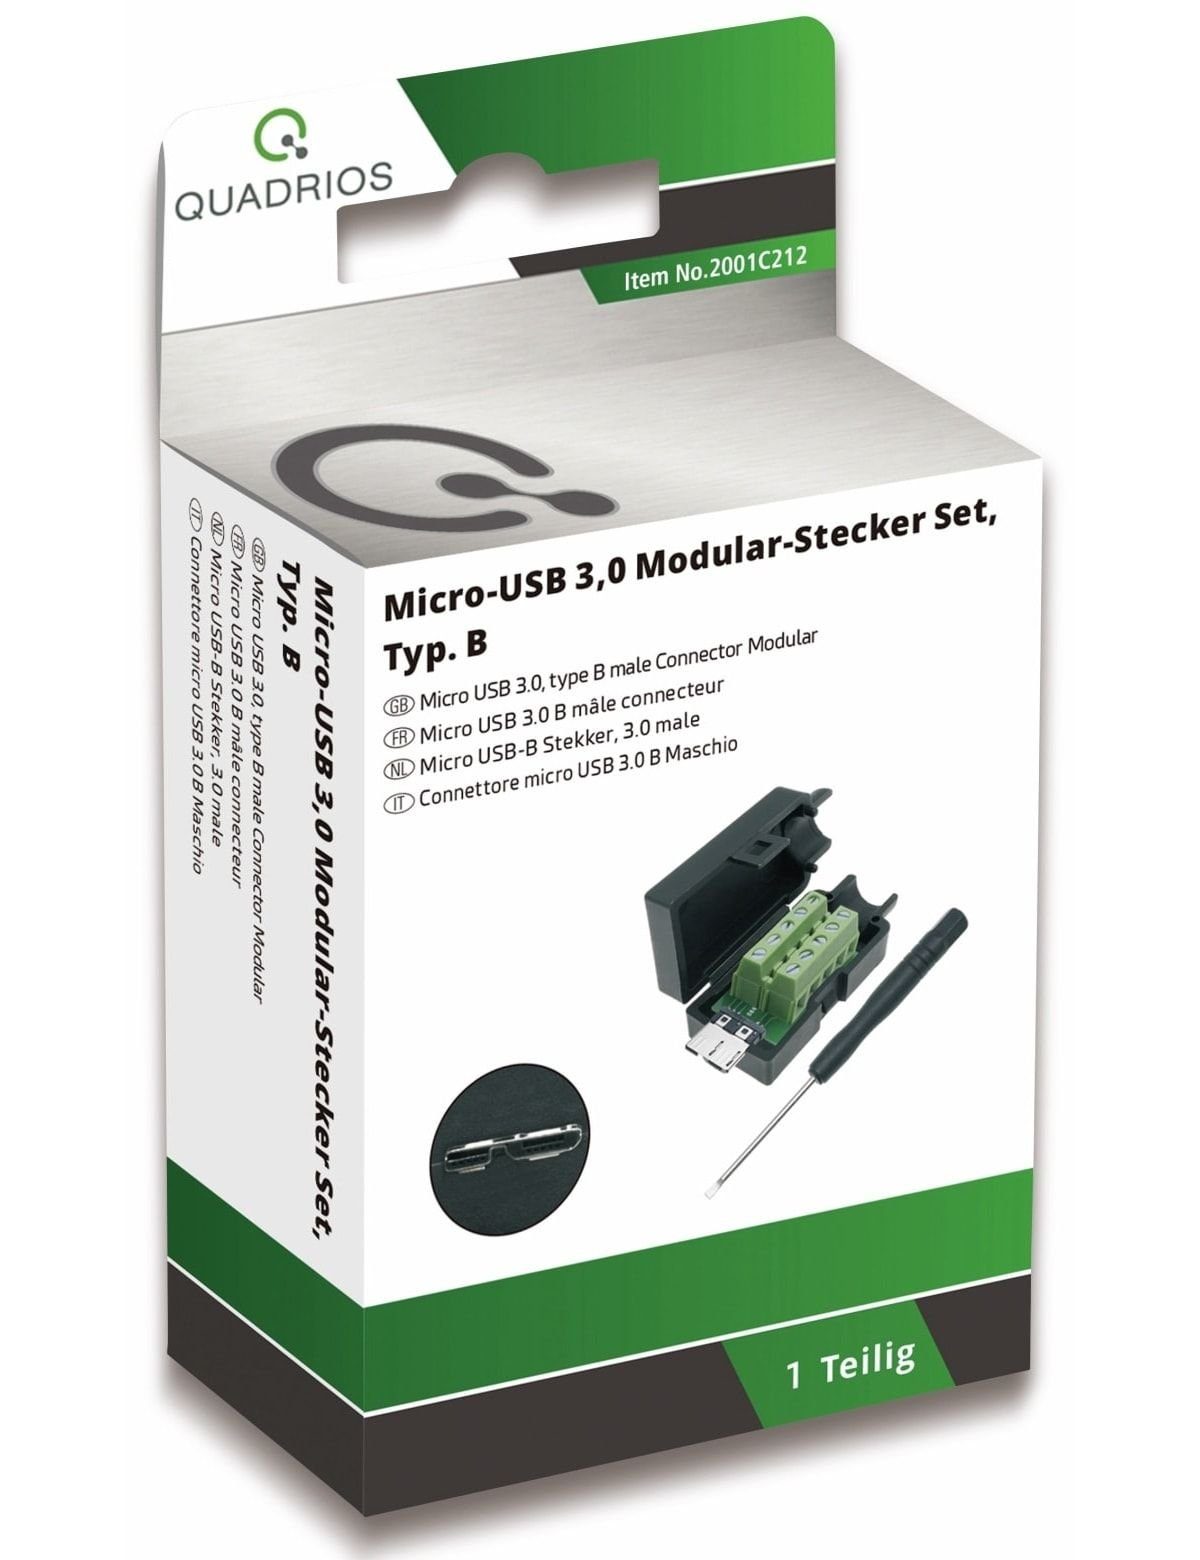 - Klemmen Quadrios QUADRIOS, USB-Modular-Set, 3.0 USB 2001C212,